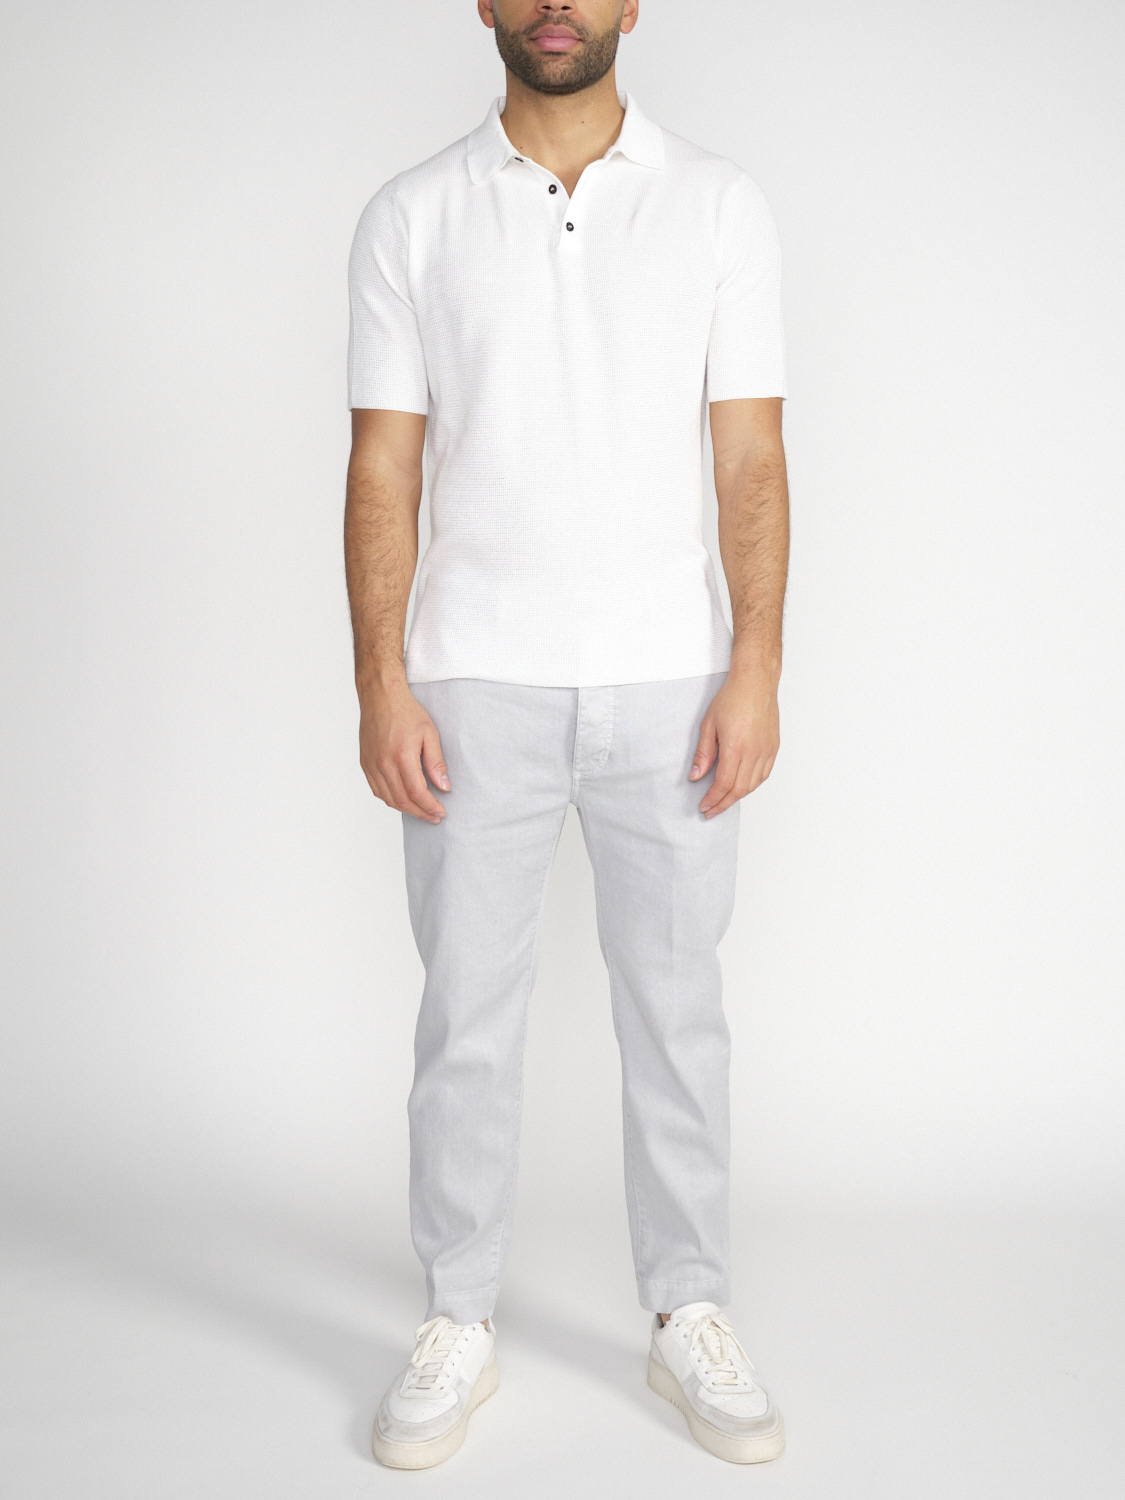 Iris von Arnim Pasqual – cotton polo shirt  white M